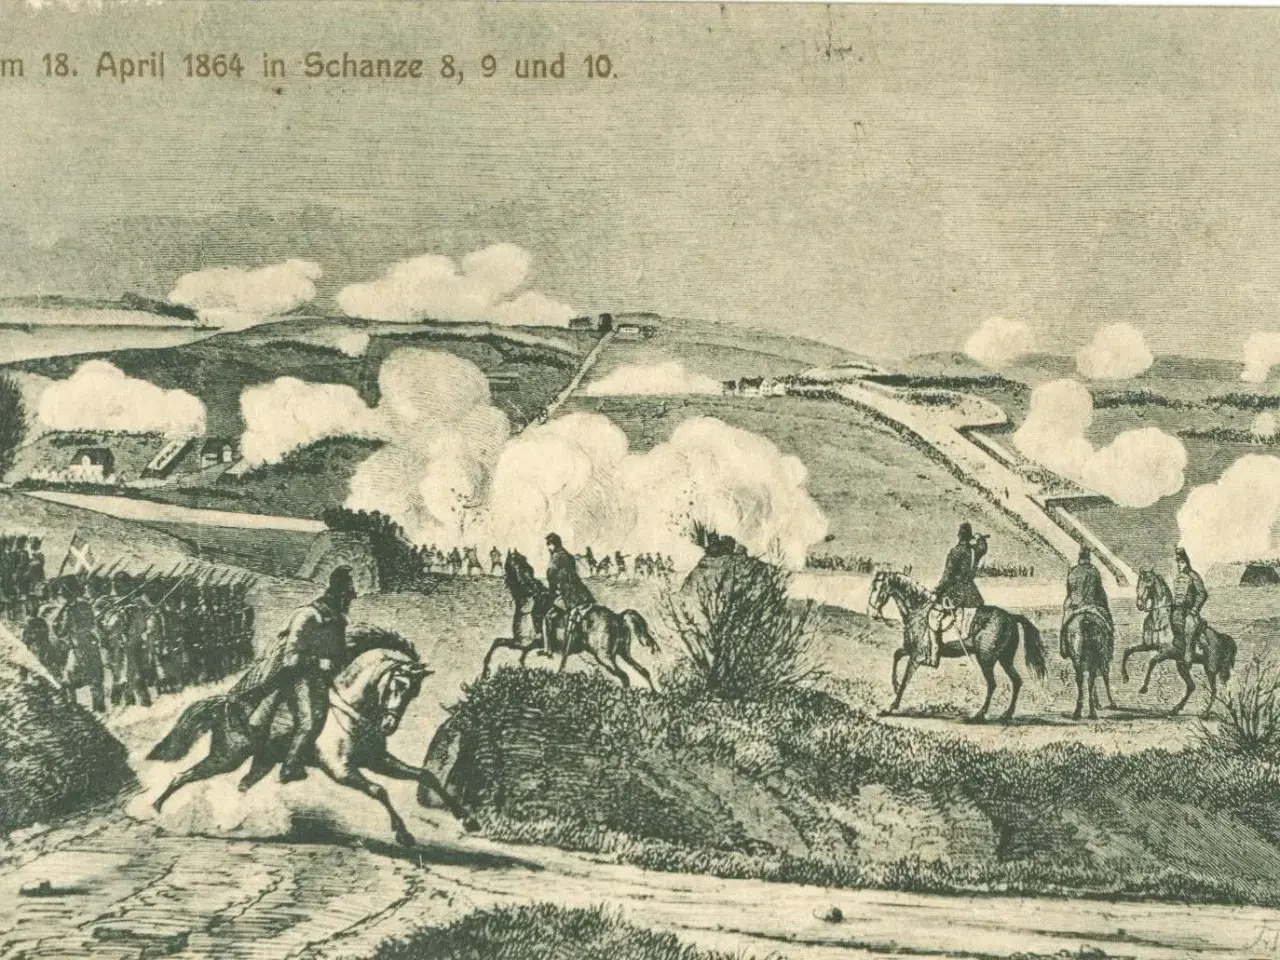 Billede 1 - Krigen 1864. Skanse 8, 9 og 10